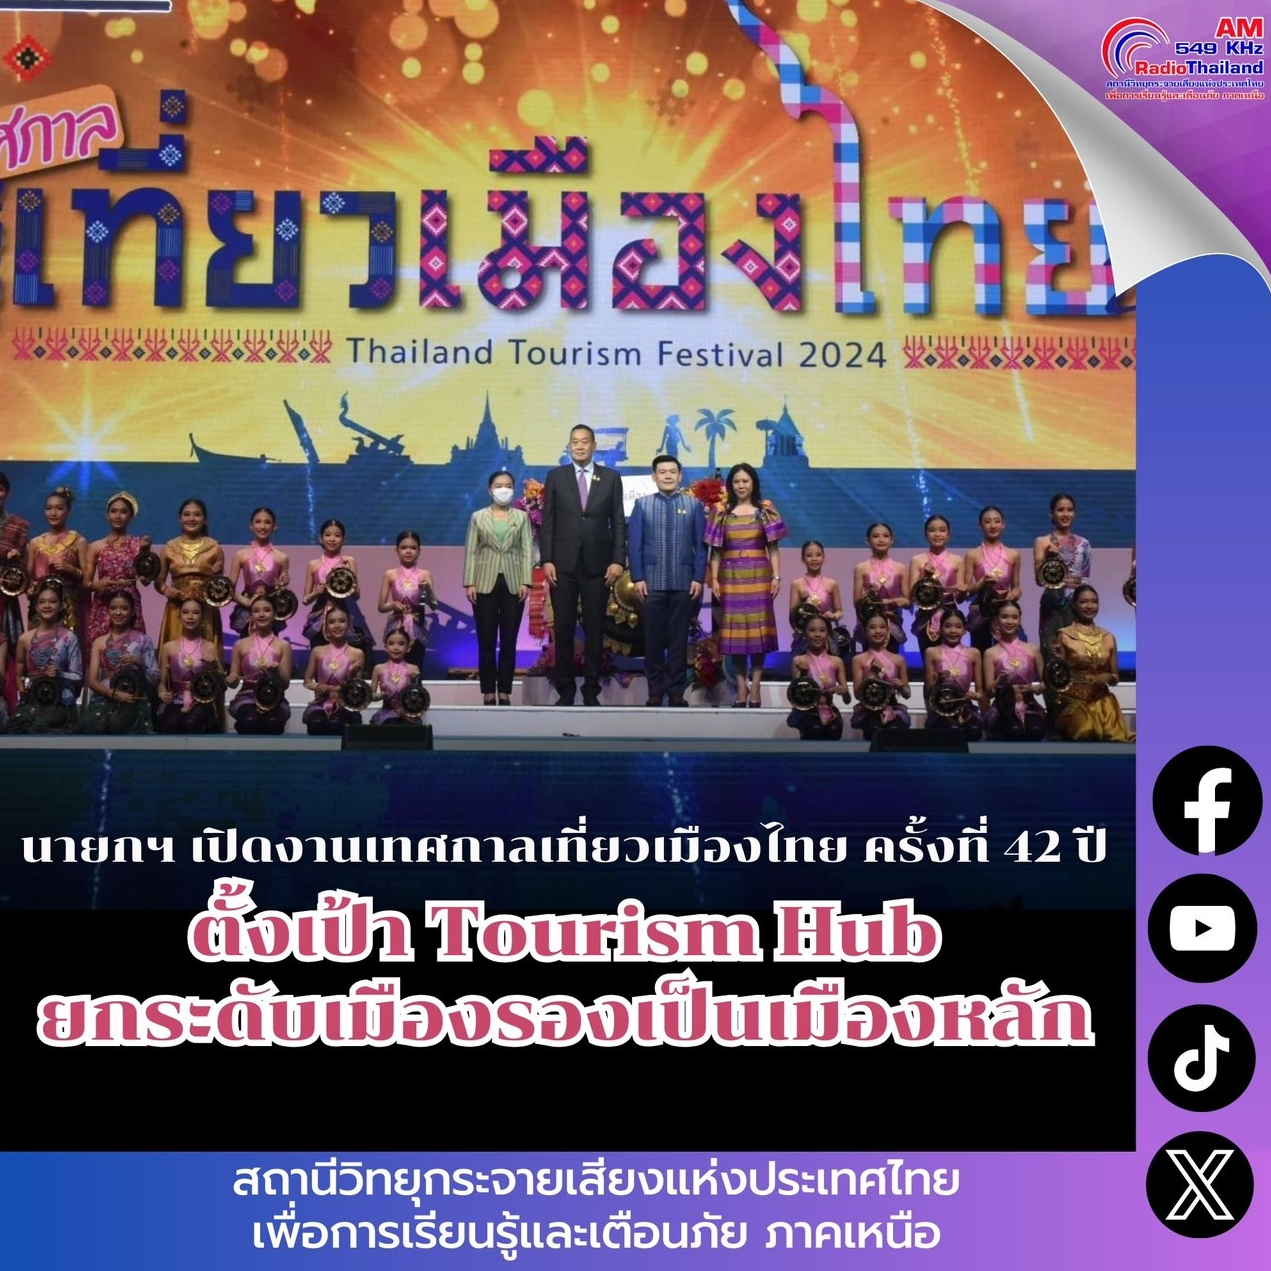 นายกฯ เปิดงานเทศกาลเที่ยวเมืองไทย ครั้งที่ 42 ปี 2567 ตั้งเป้าหมายให้ไทยเป็น Tourism Hub ยกระดับเมืองรองเป็นเมืองหลักด้านการท่องเที่ยว